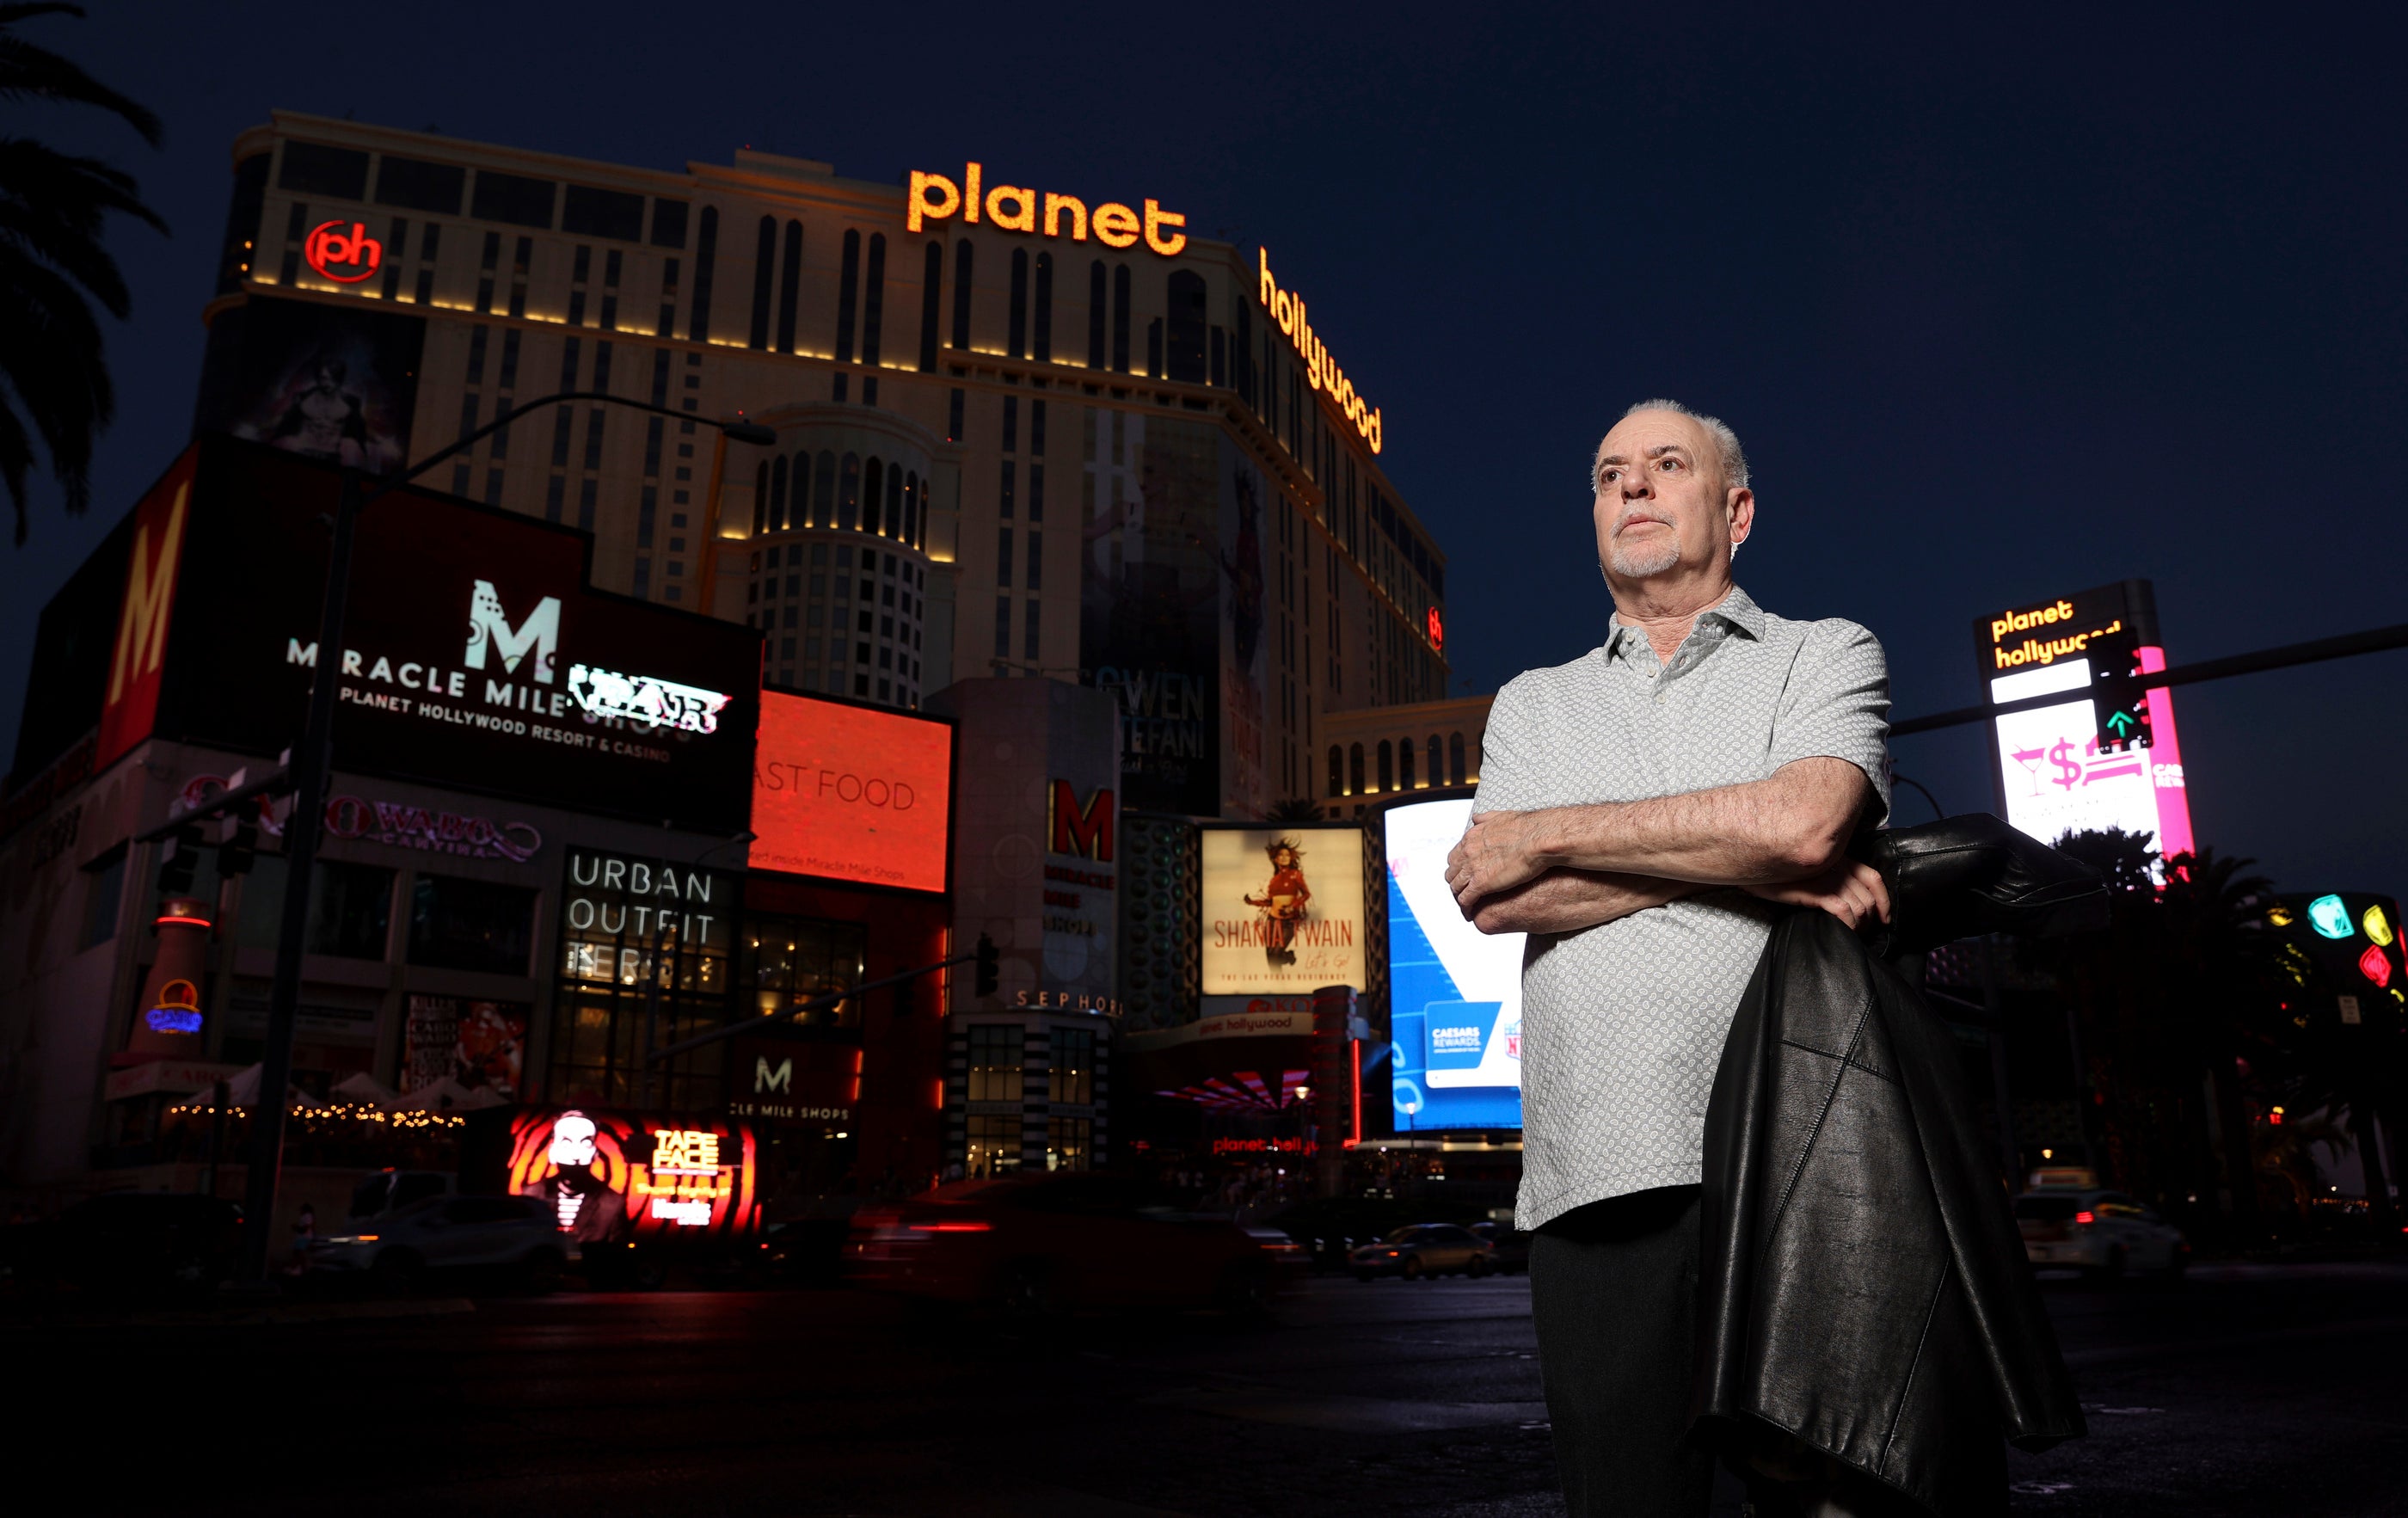 Jeff German, presentador de “Mobbed Up”, posa con el Planet Hollywood de fondo en el Strip de Las Vegas